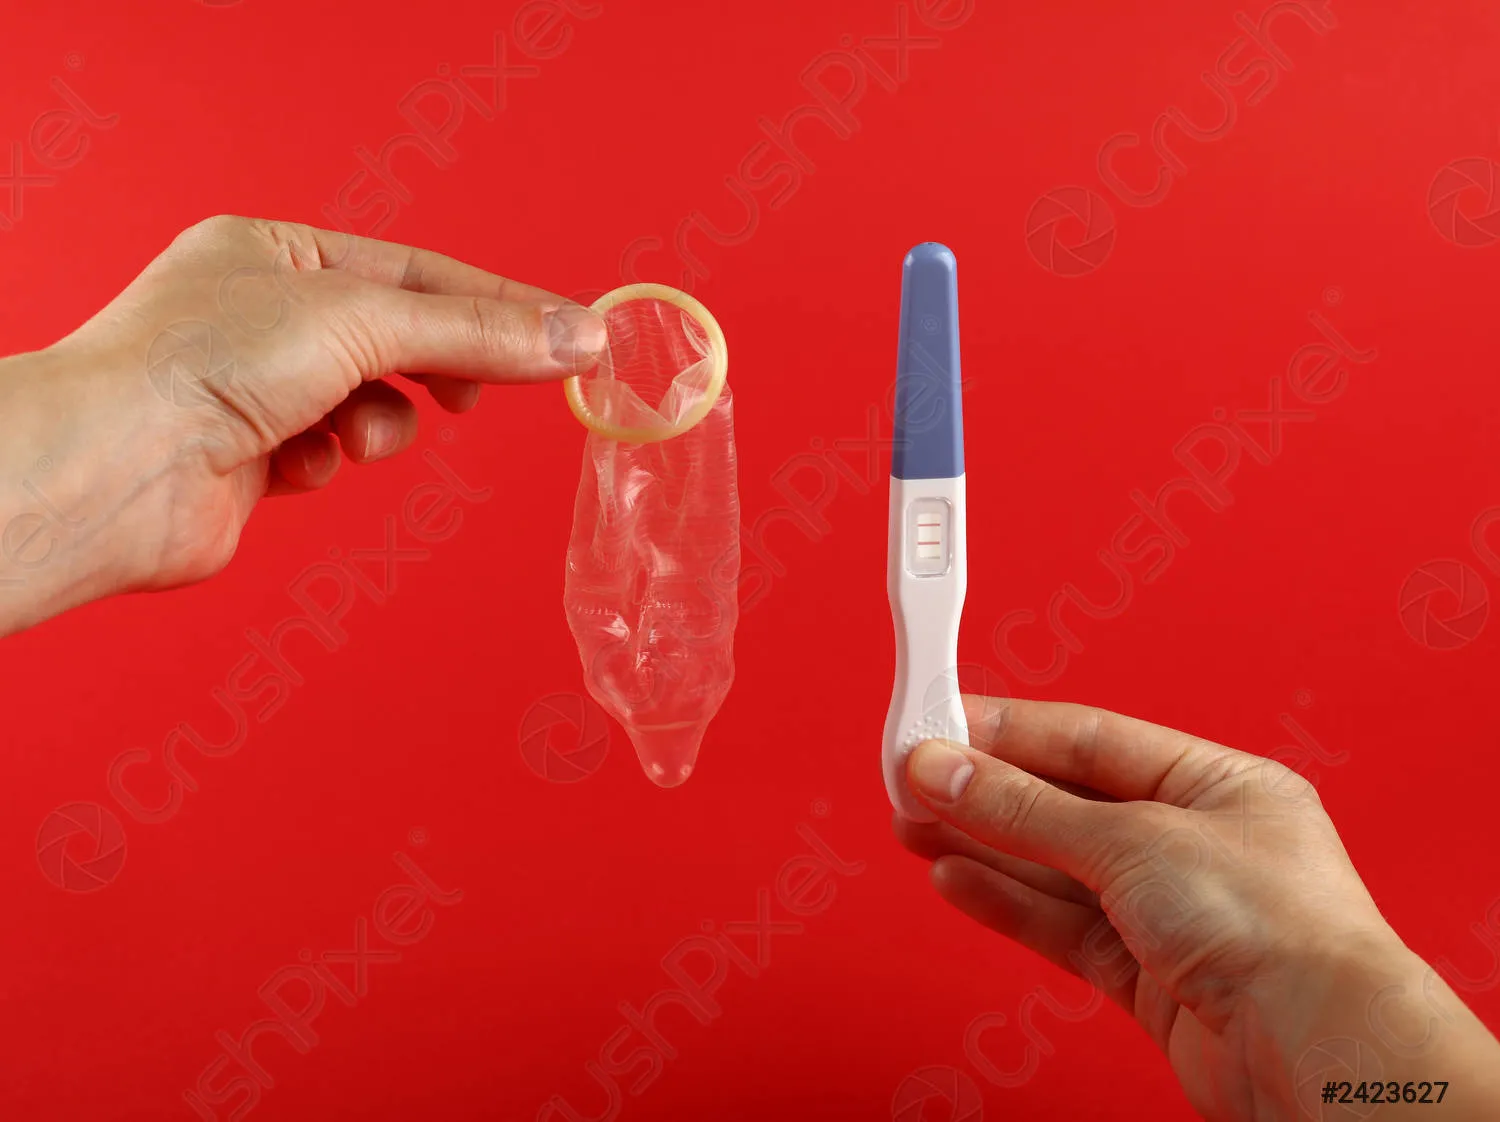 если кончить в презерватив можно забеременеть после фото 11